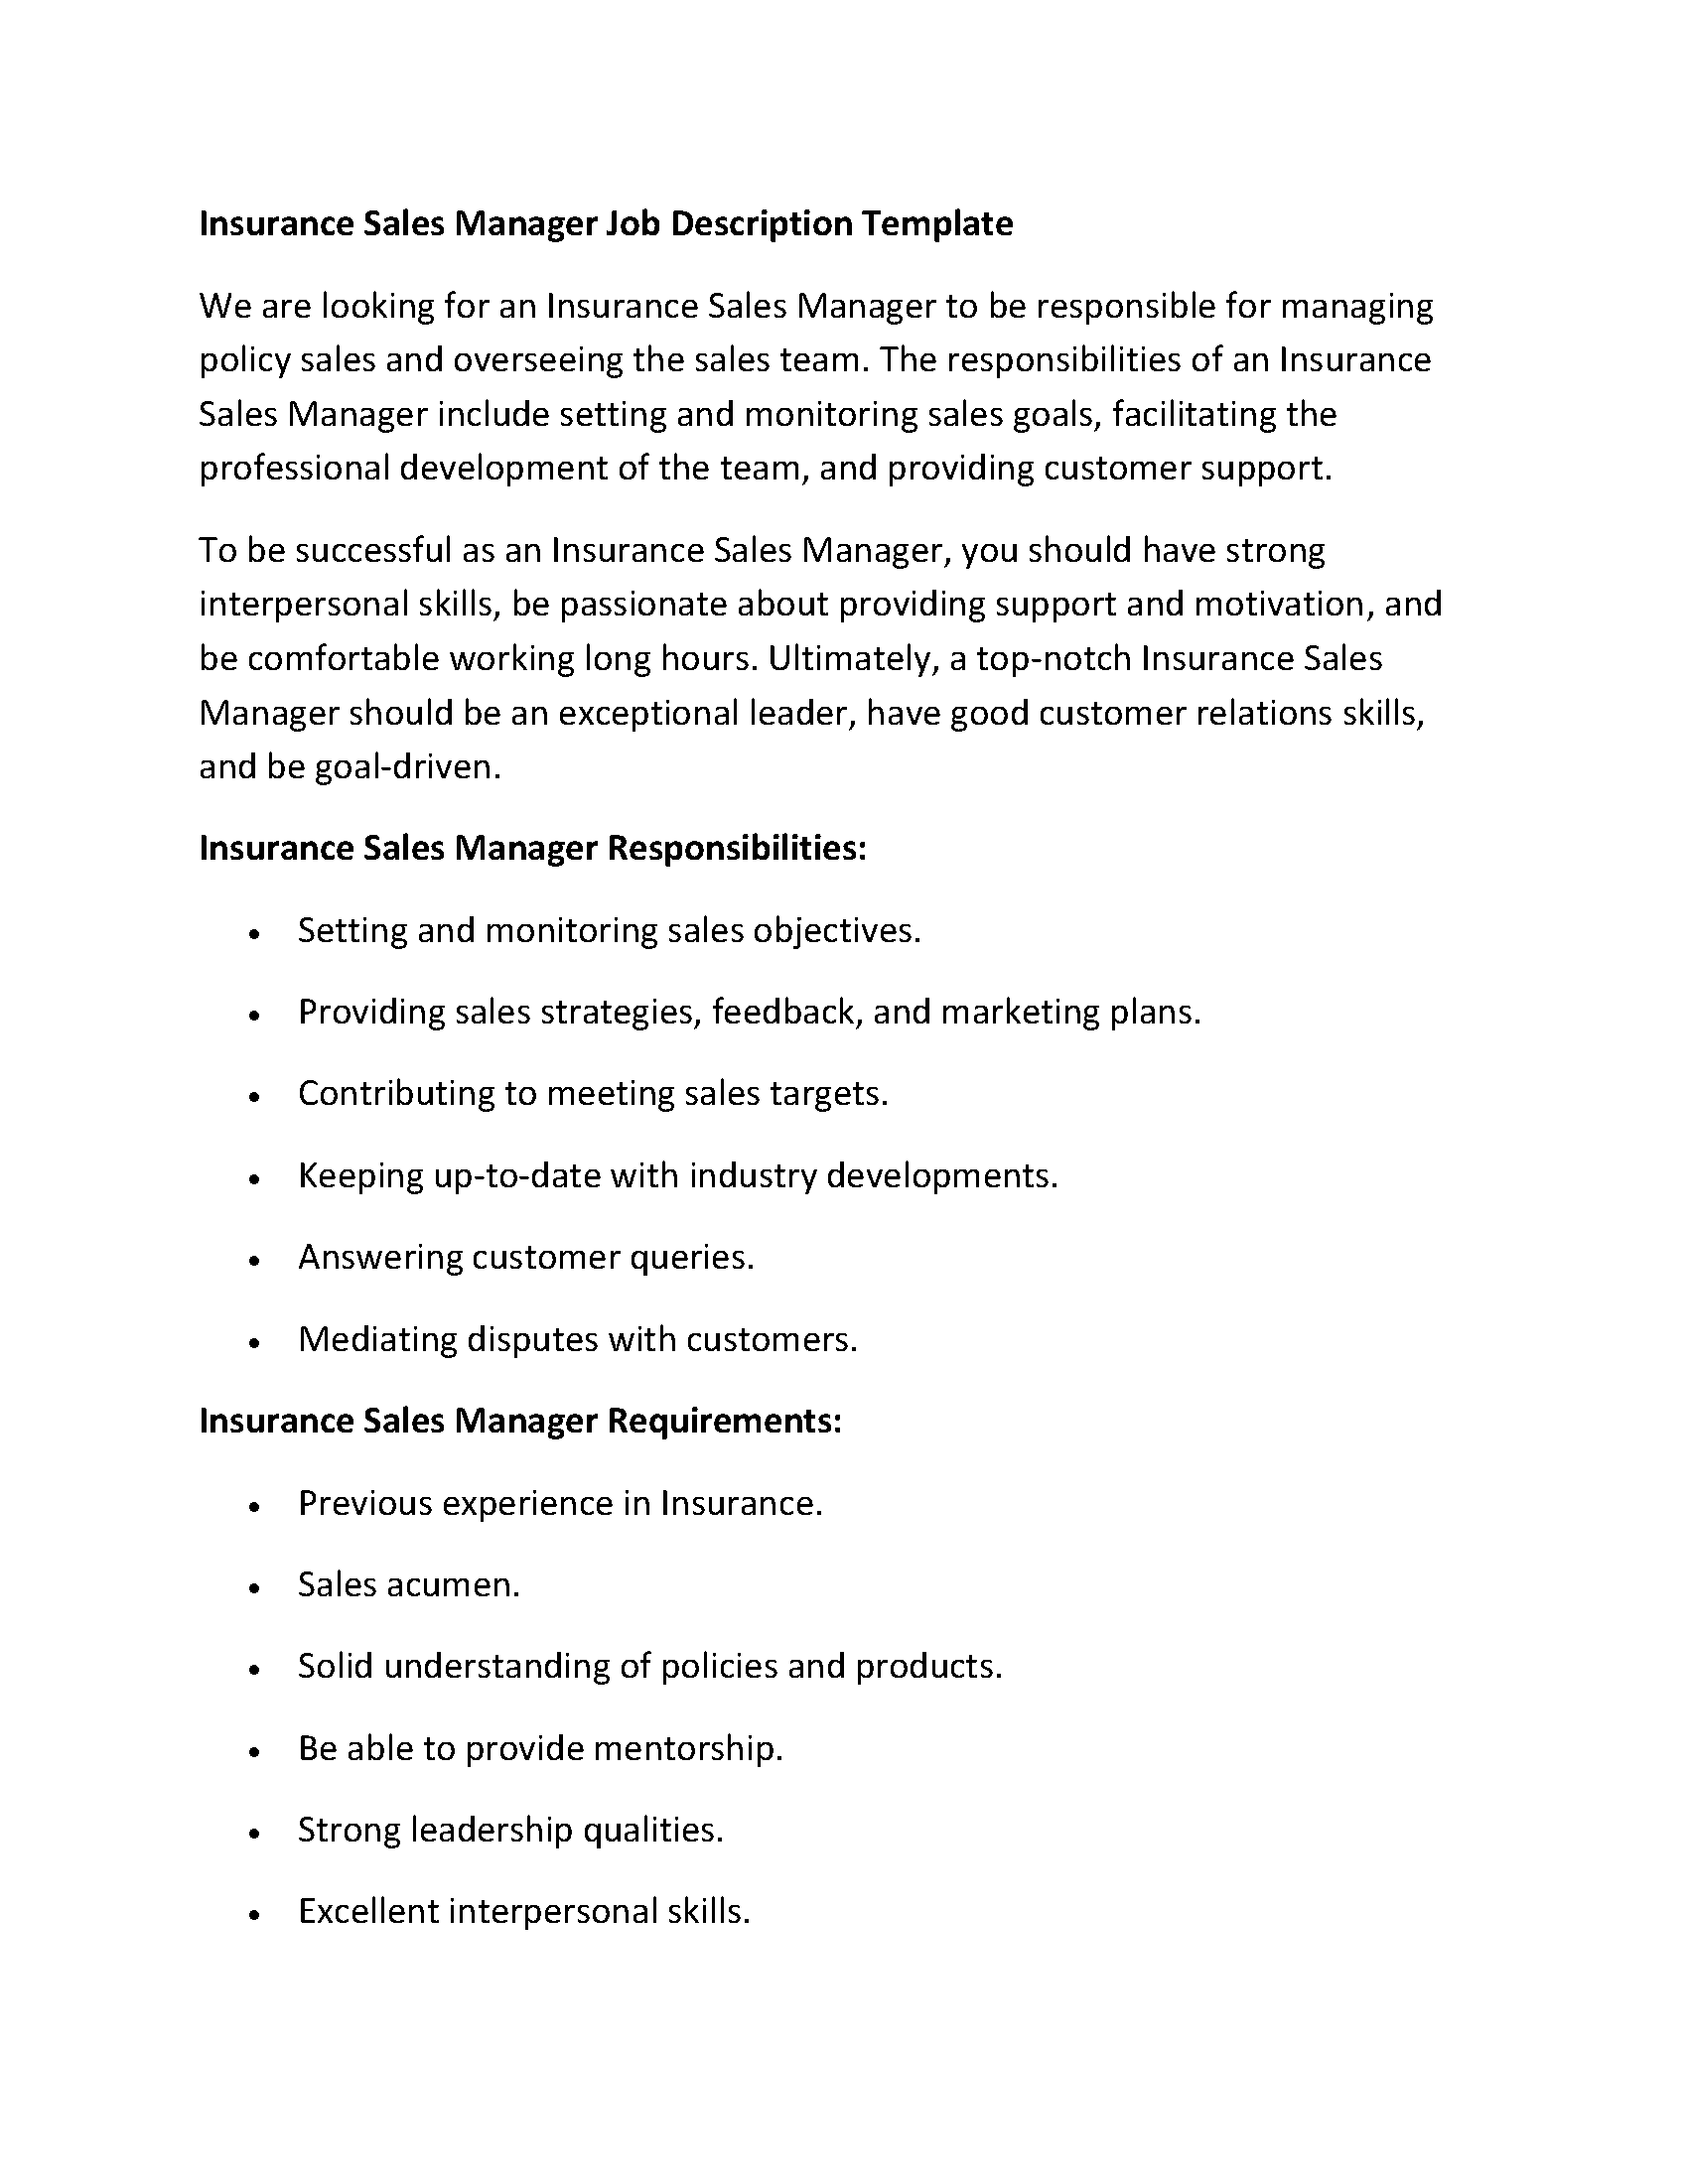 Insurance Sales Manager Job Description Template